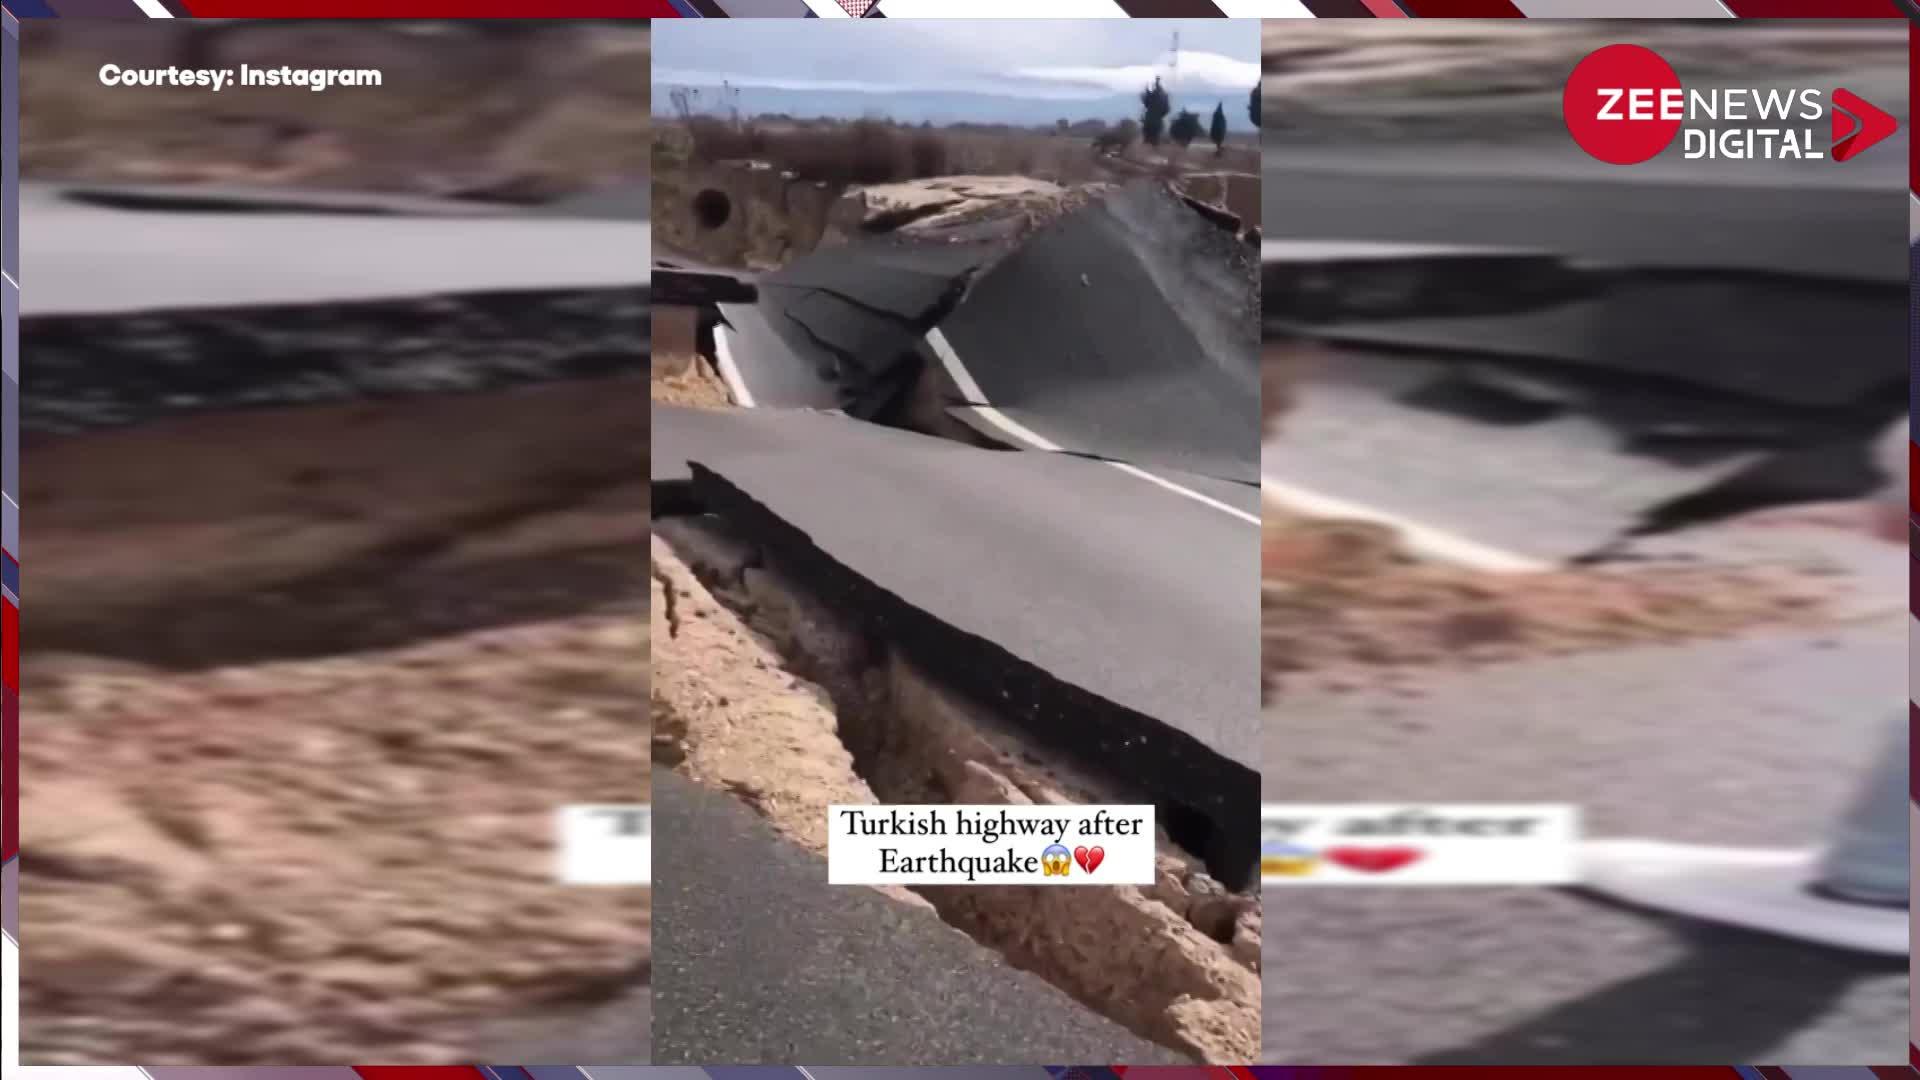 Turkey में विनाशकारी भूकंप के बाद ऐसा हुआ Highway का हाल, बर्बादी देख लोगों ने मांगी सलामती की दुआ...